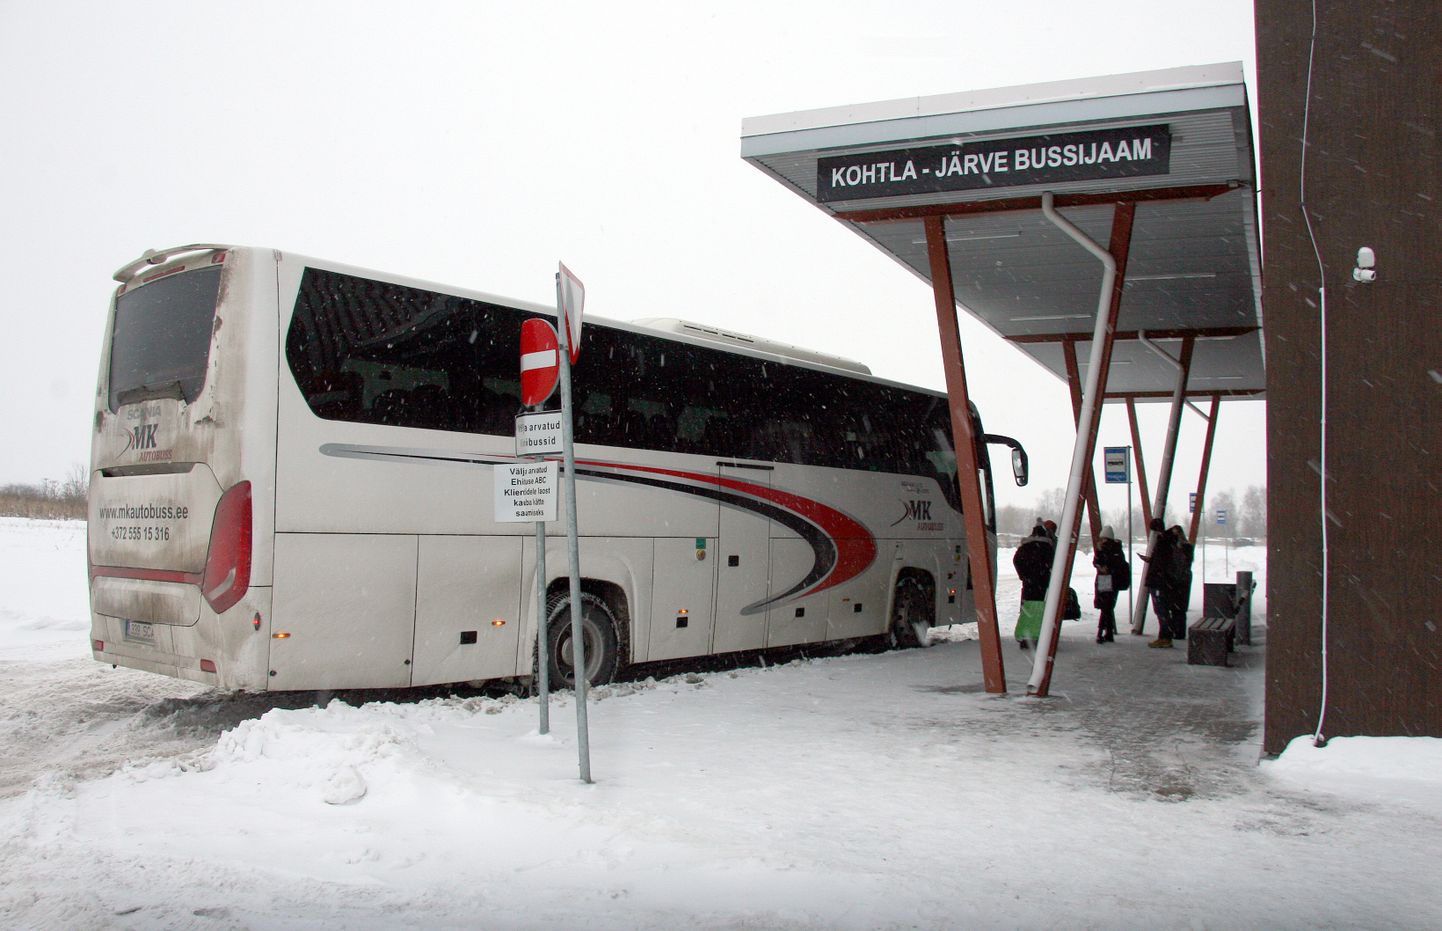 Sel aastal sõidab Vironia keskuse juurest läbi senisest veelgi vähem kaugliinibusse.